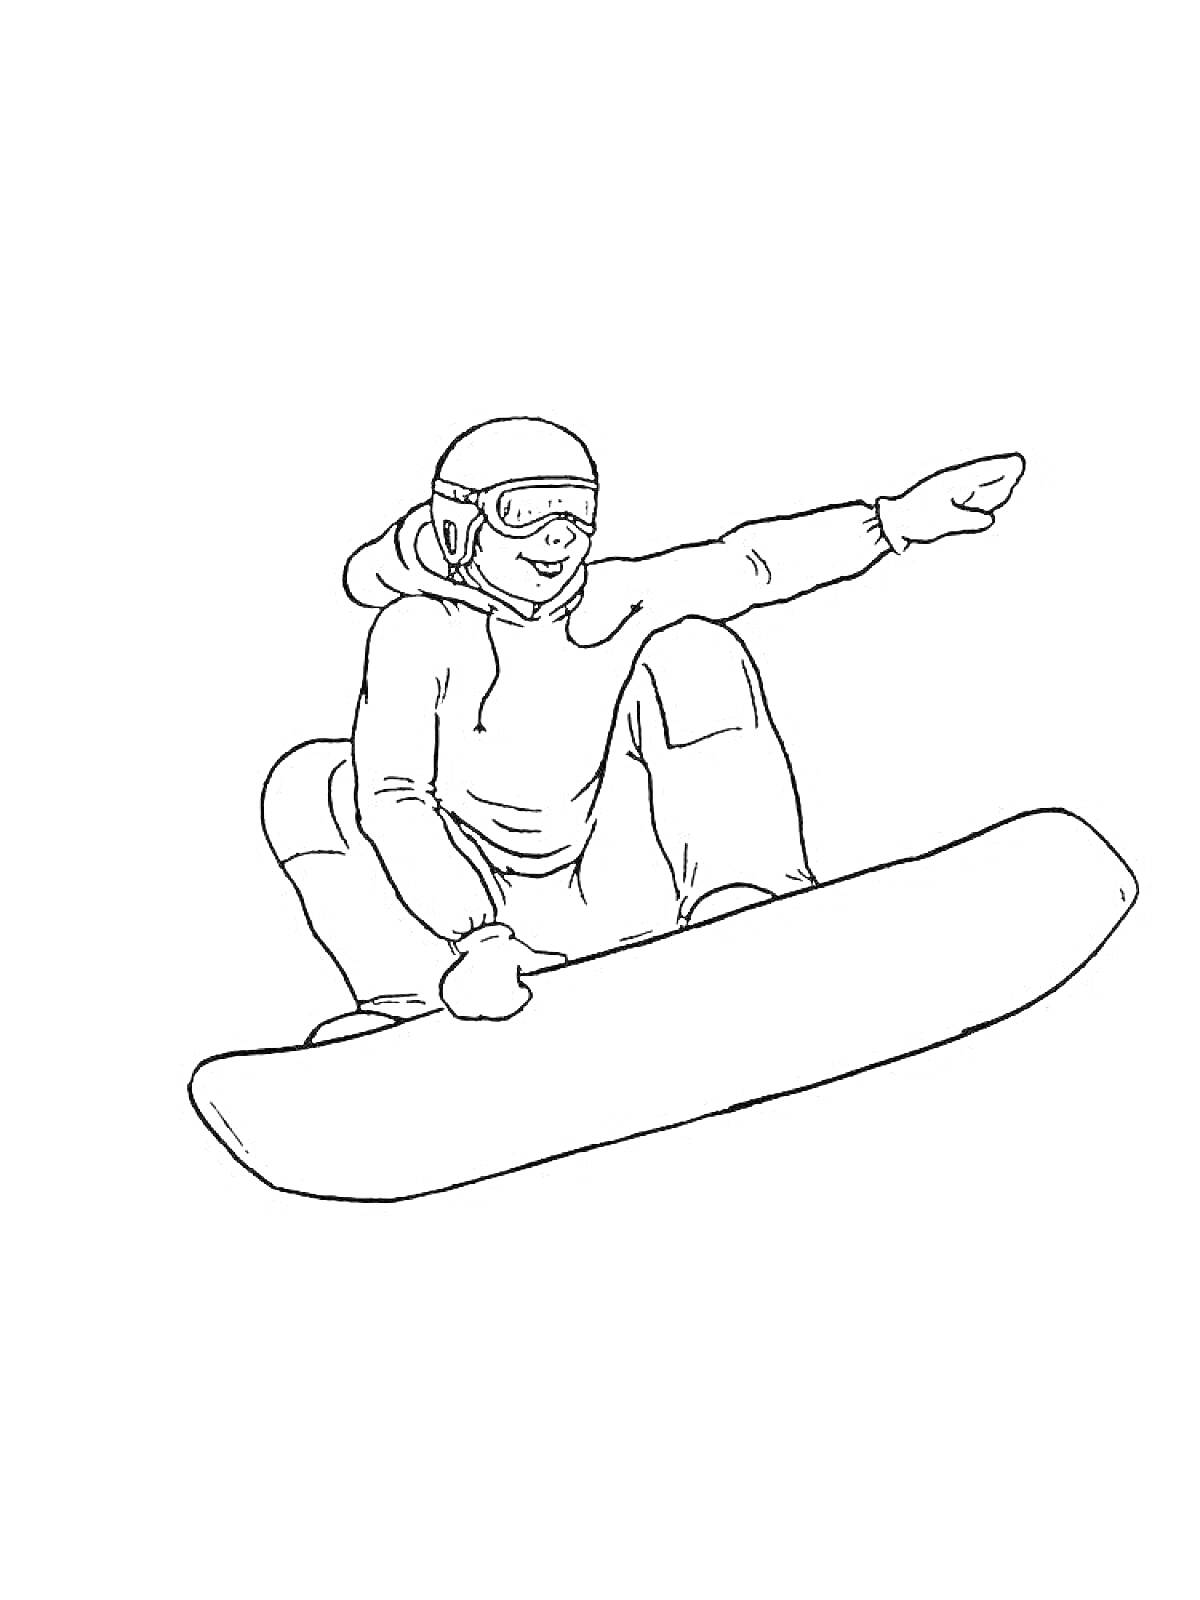 Раскраска Сноубордист в прыжке с вытянутой рукой, в шлеме и защитных очках